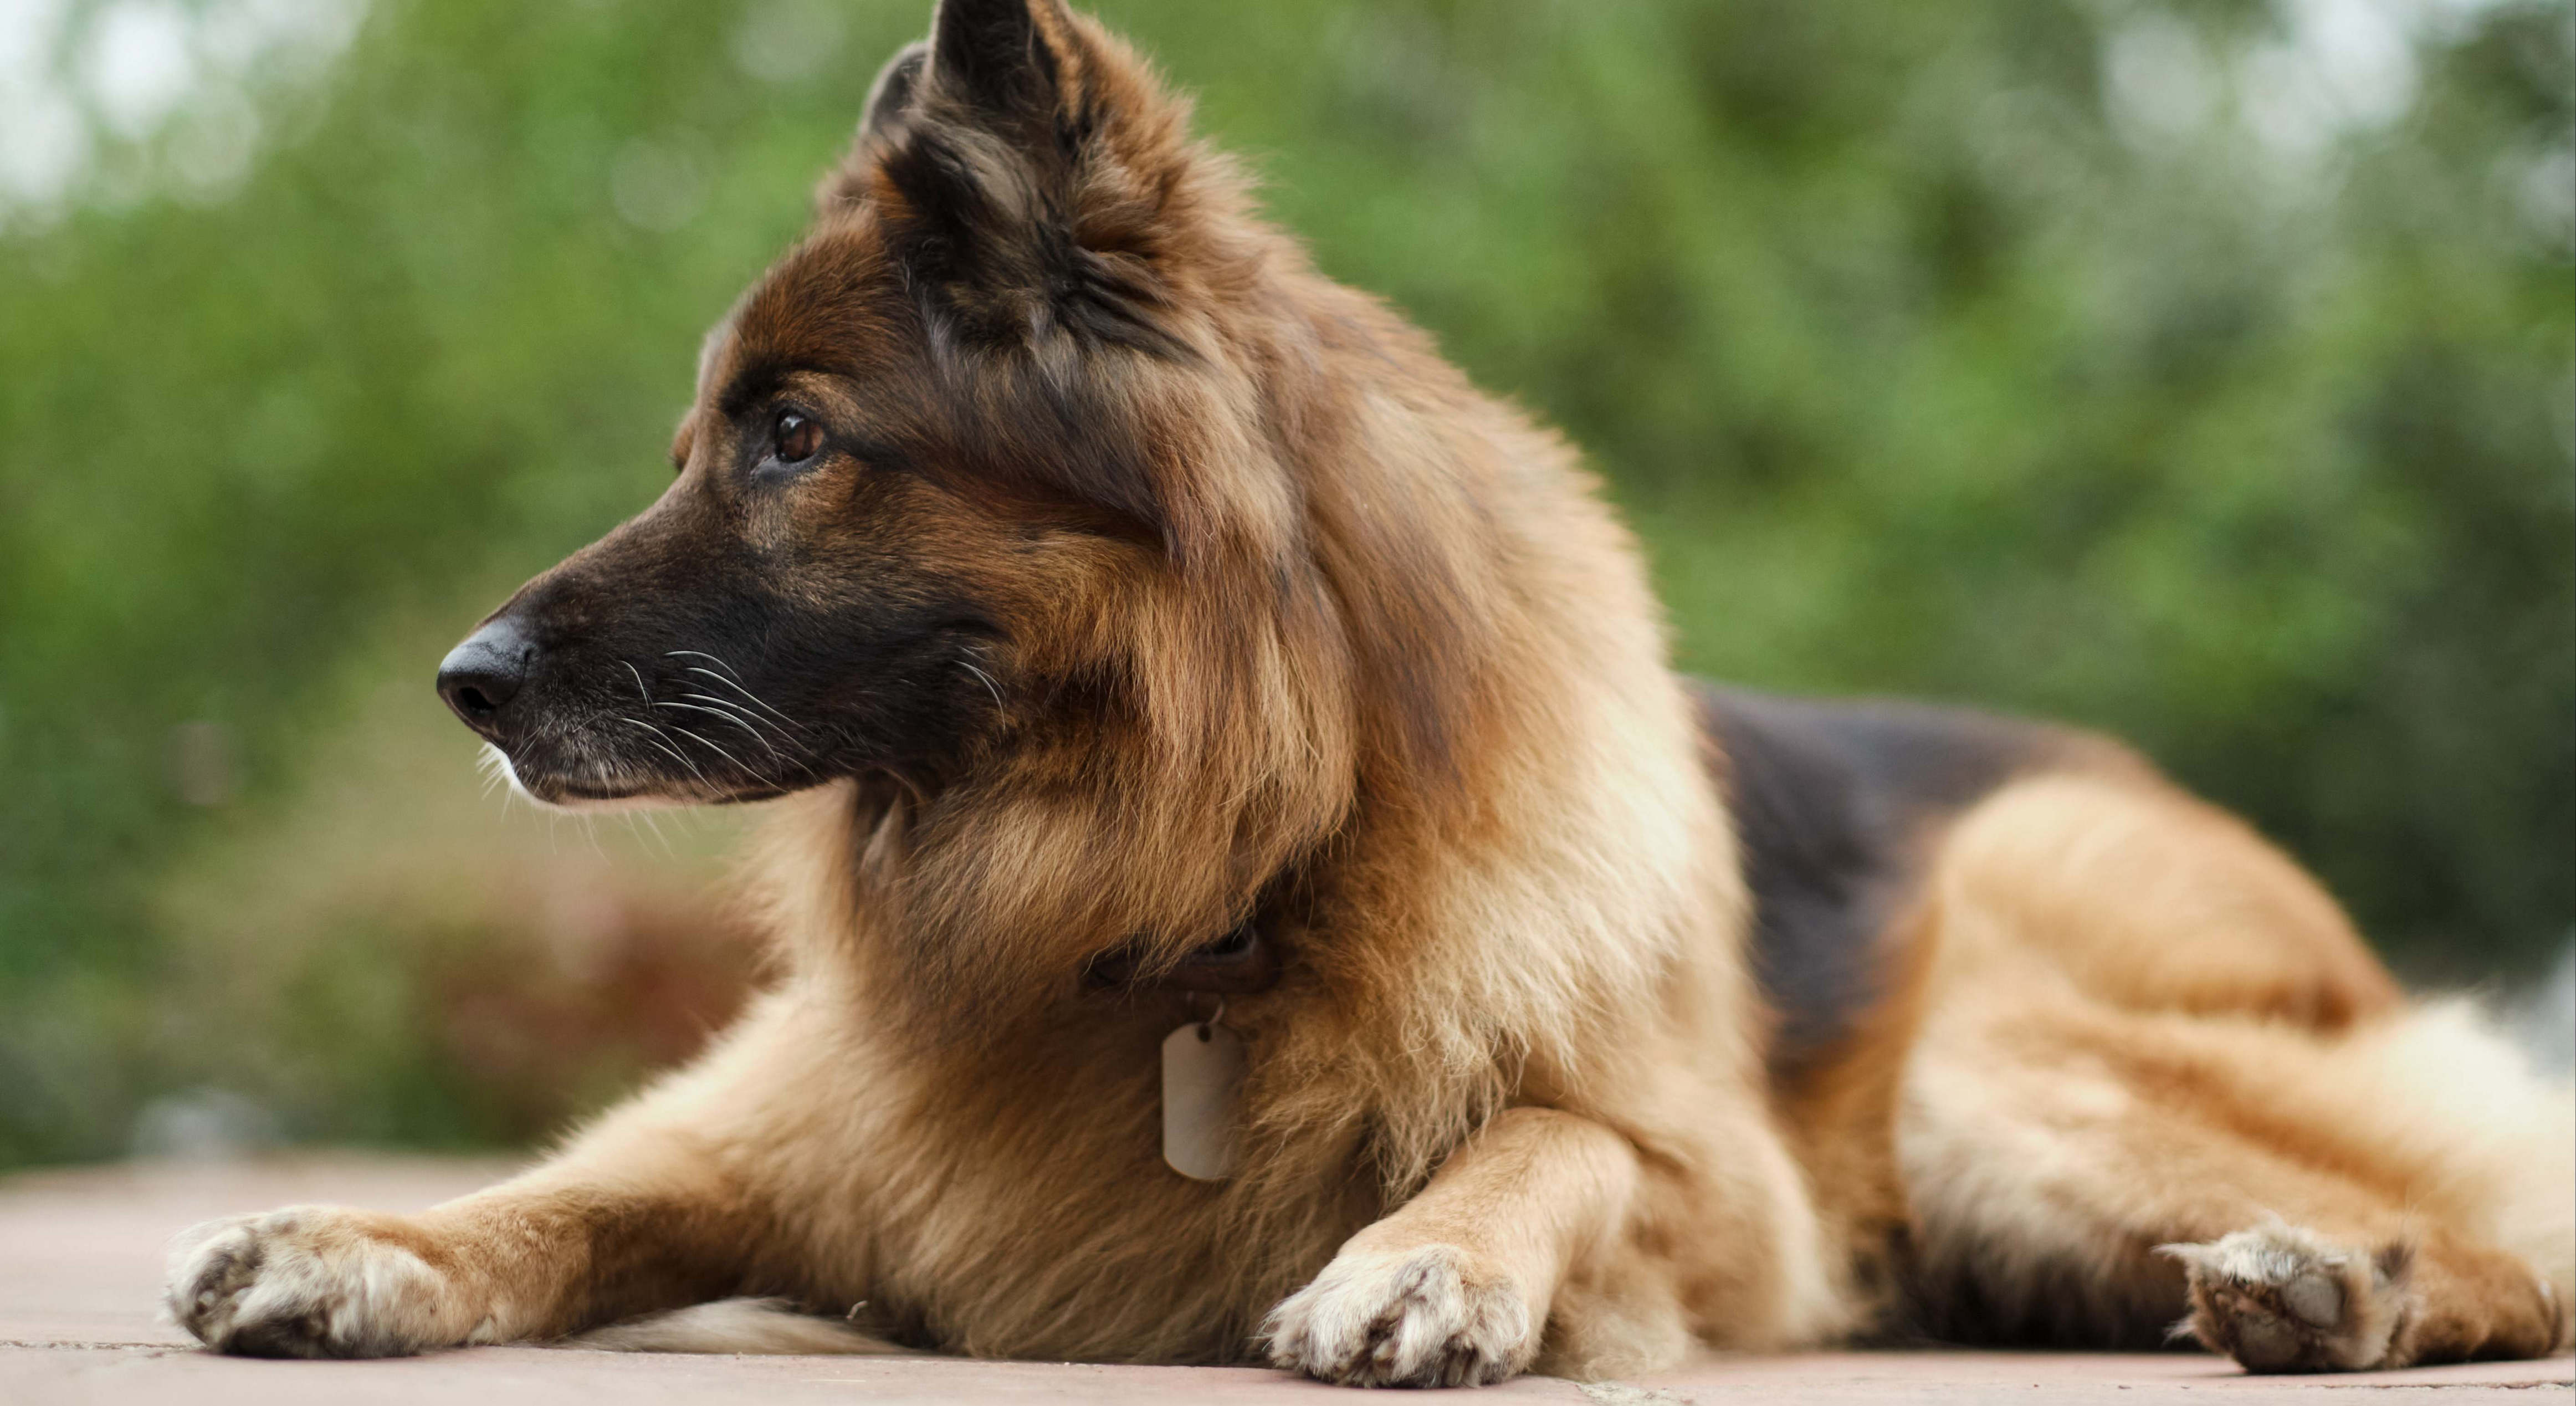 la raza de perro que ha desbancado al border collie como la más inteligente, según un estudio